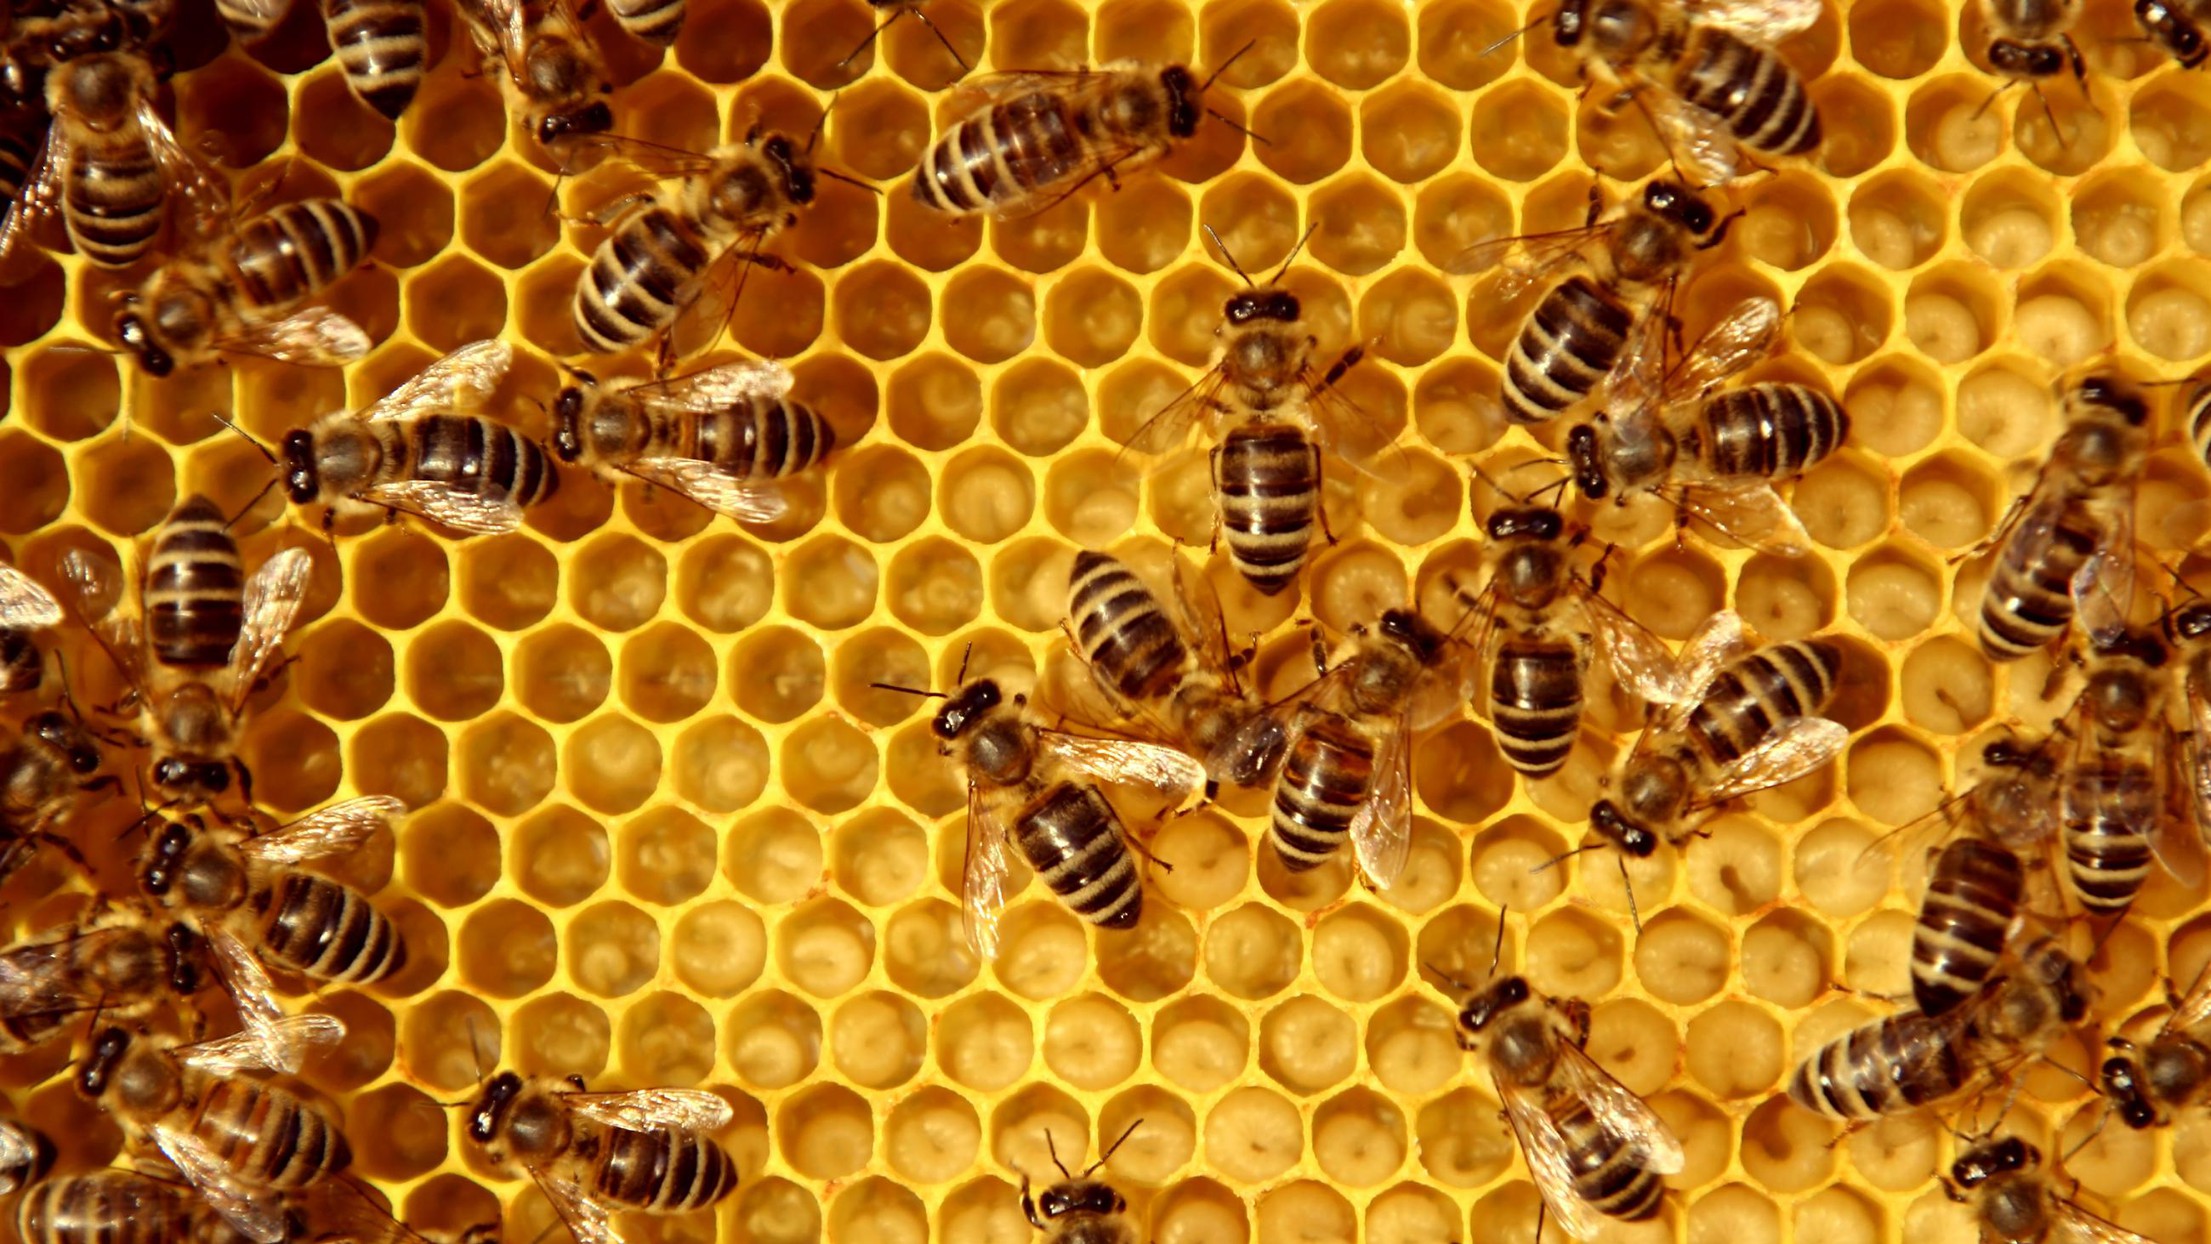 De l'intelligence artificielle pour sauver les abeilles